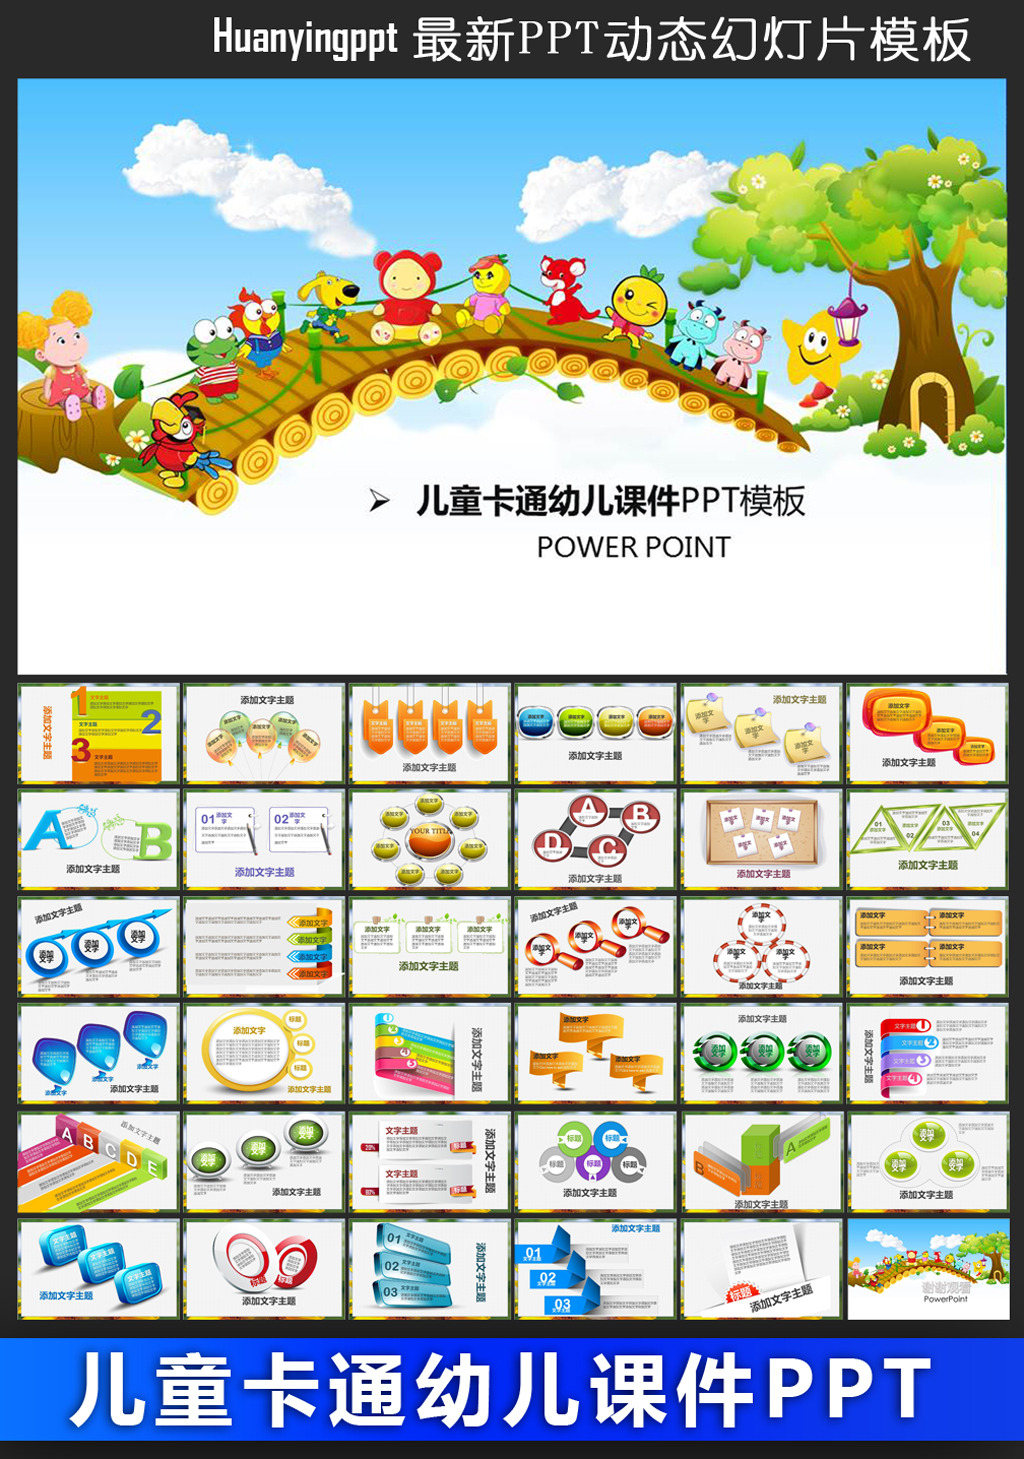 儿童卡通幼儿园教育教学课件动态PPT模板下载